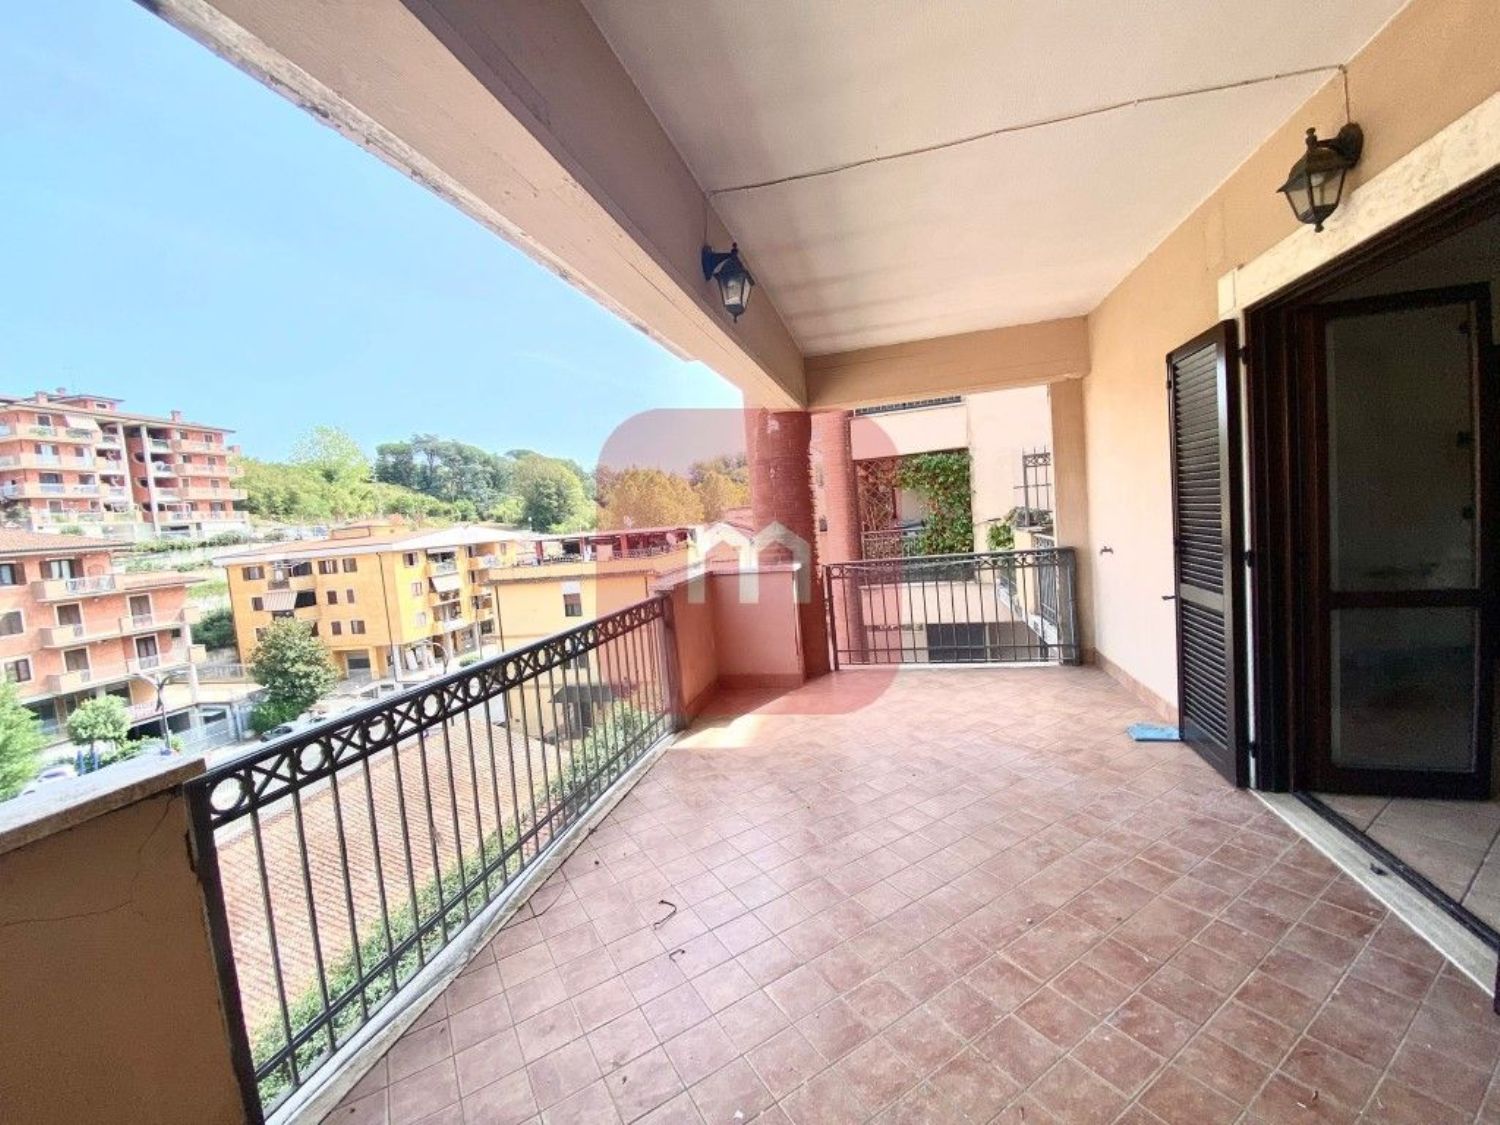 Appartamento in vendita a Zagarolo, 3 locali, prezzo € 159.000 | CambioCasa.it